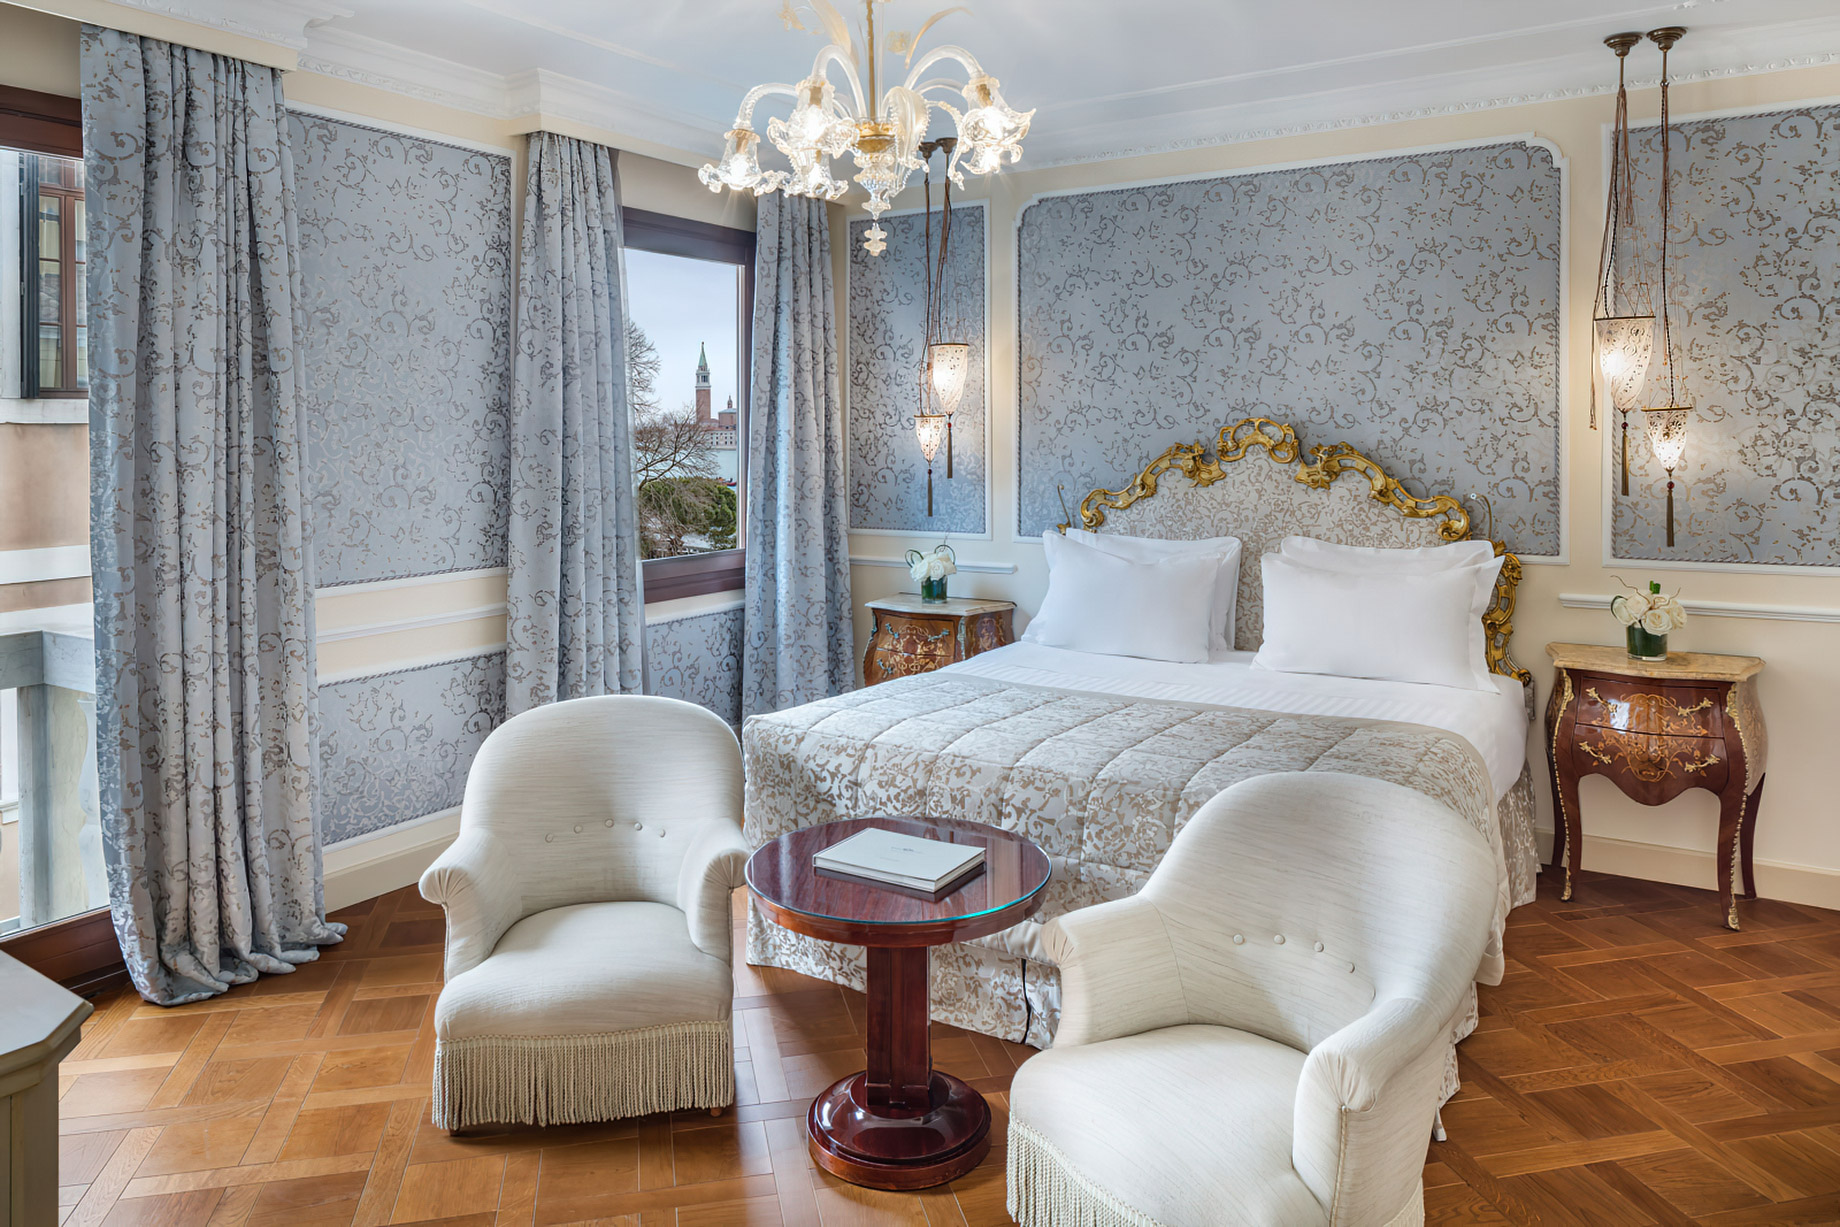 Baglioni Hotel Luna, Venezia – Venice, Italy – Canal View Room